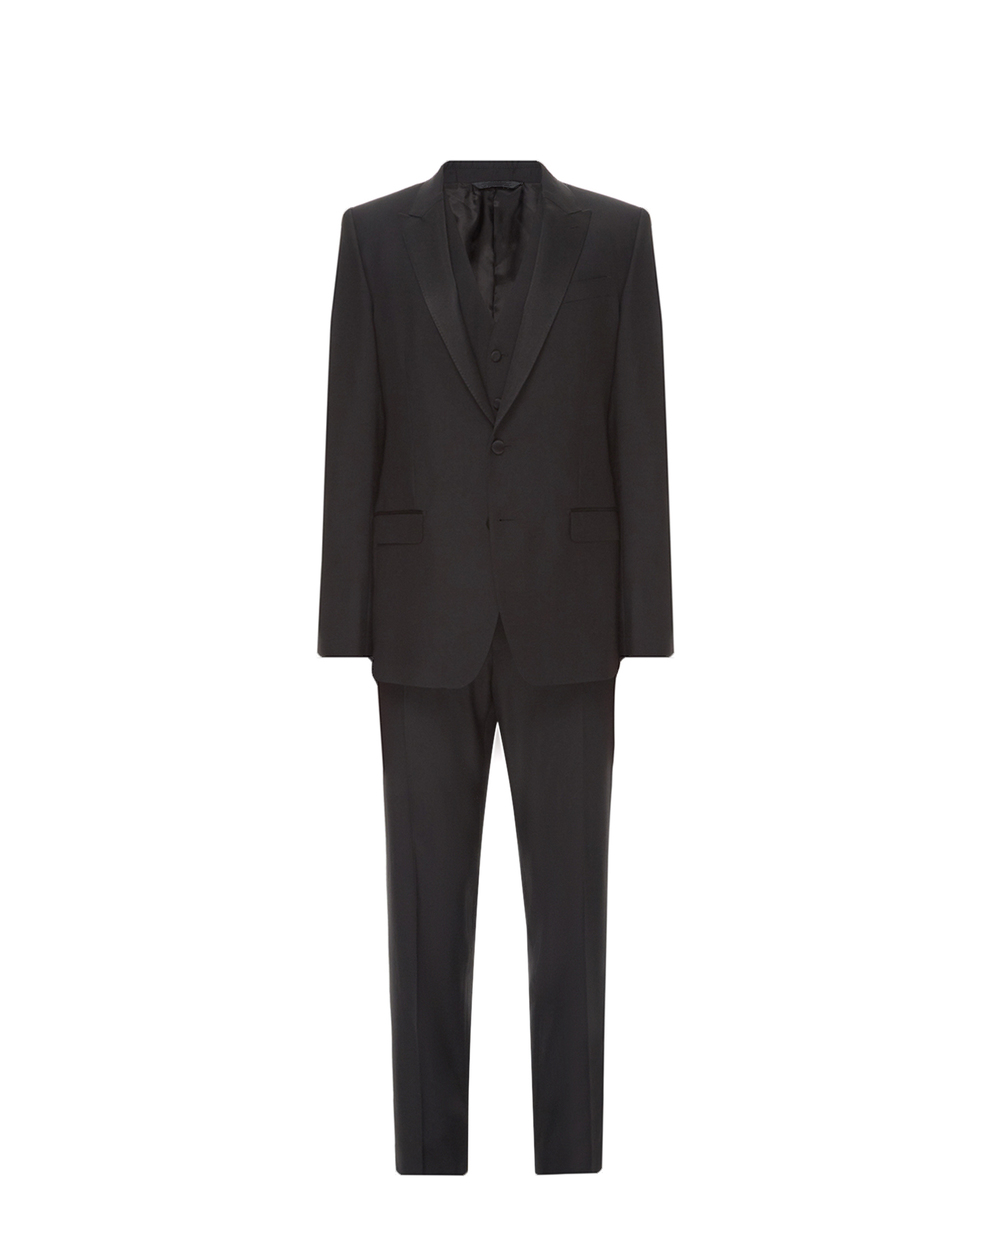 Шерстяной костюм Martini (пиджак, жилет, брюки) Dolce&Gabbana GK2WMT-FU2Z8, черный цвет • Купить в интернет-магазине Kameron